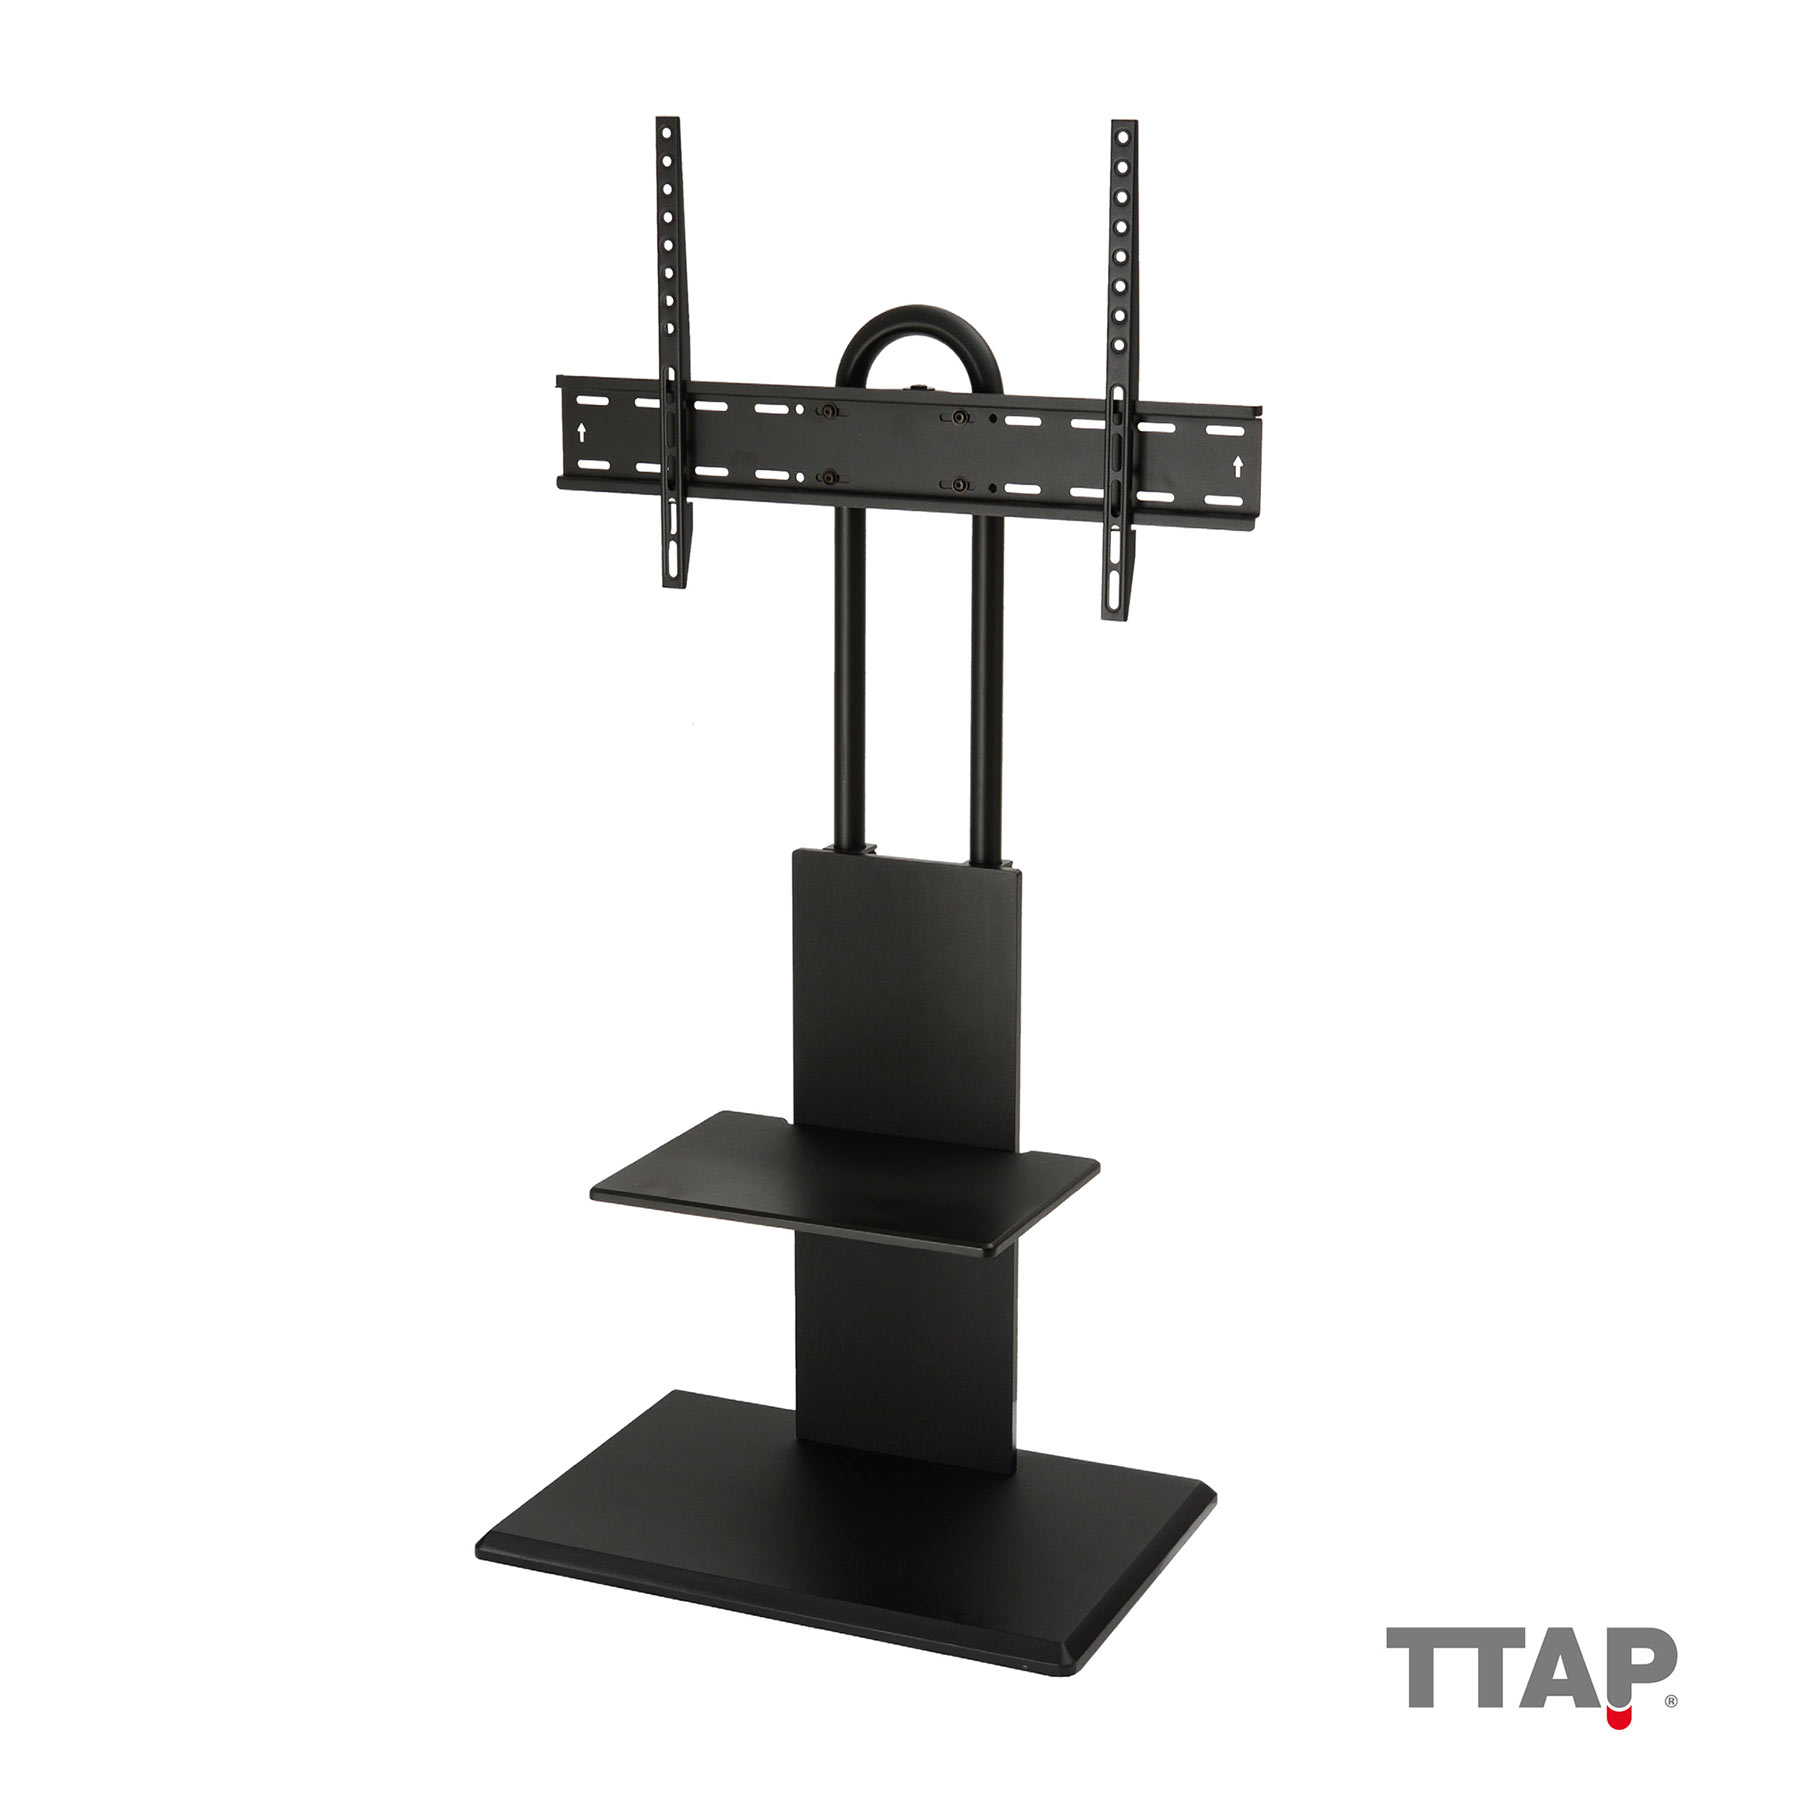 Image of TTAP FS2 BLK Pedestal TV Stand with Shelf VESA Mount in Black